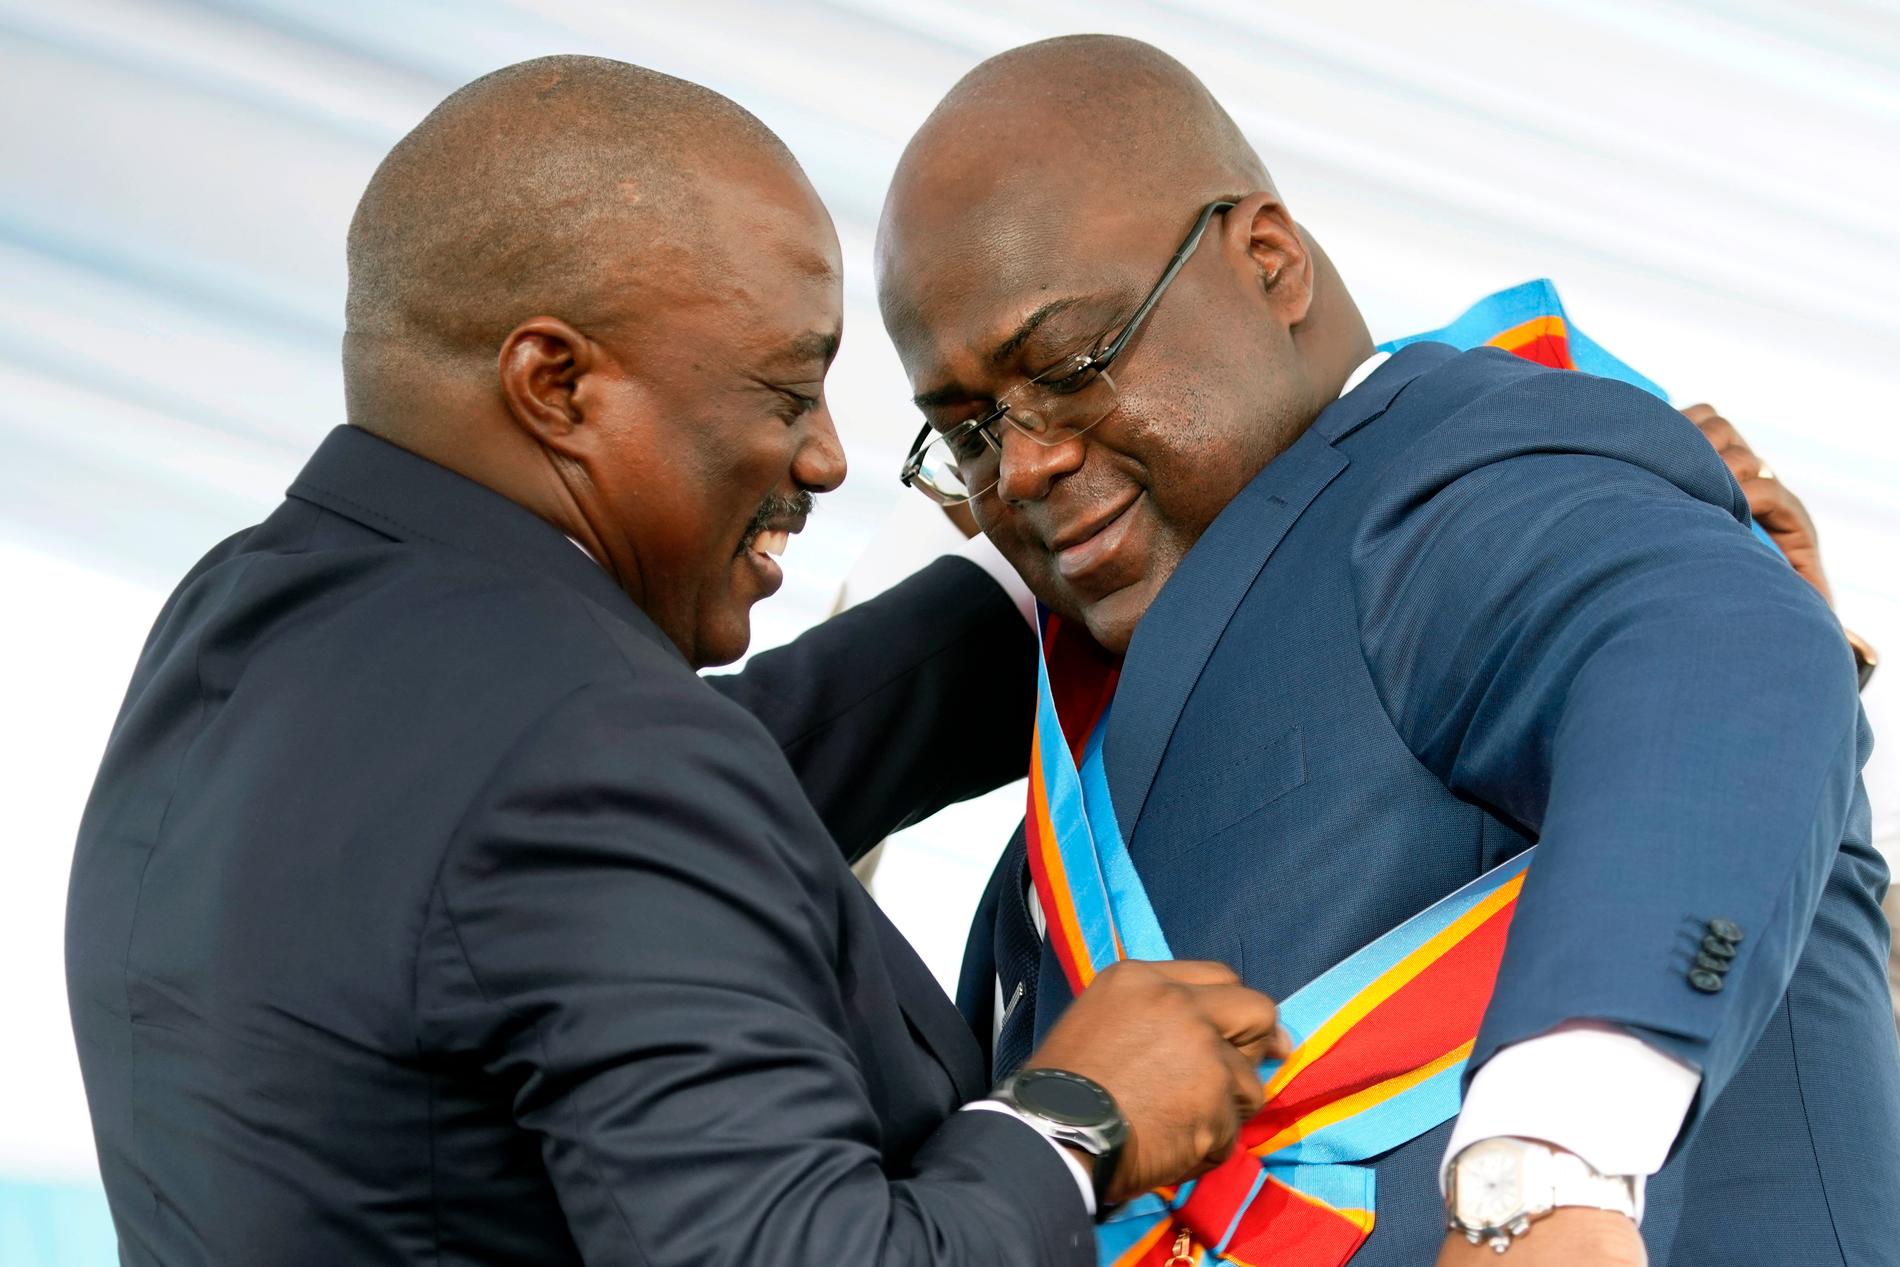 Kongo-Kinshasas president Félix Tshisekedi får landets presidentliga ordensband av sin föregångare Joseph Kabila den 24 januari i år.